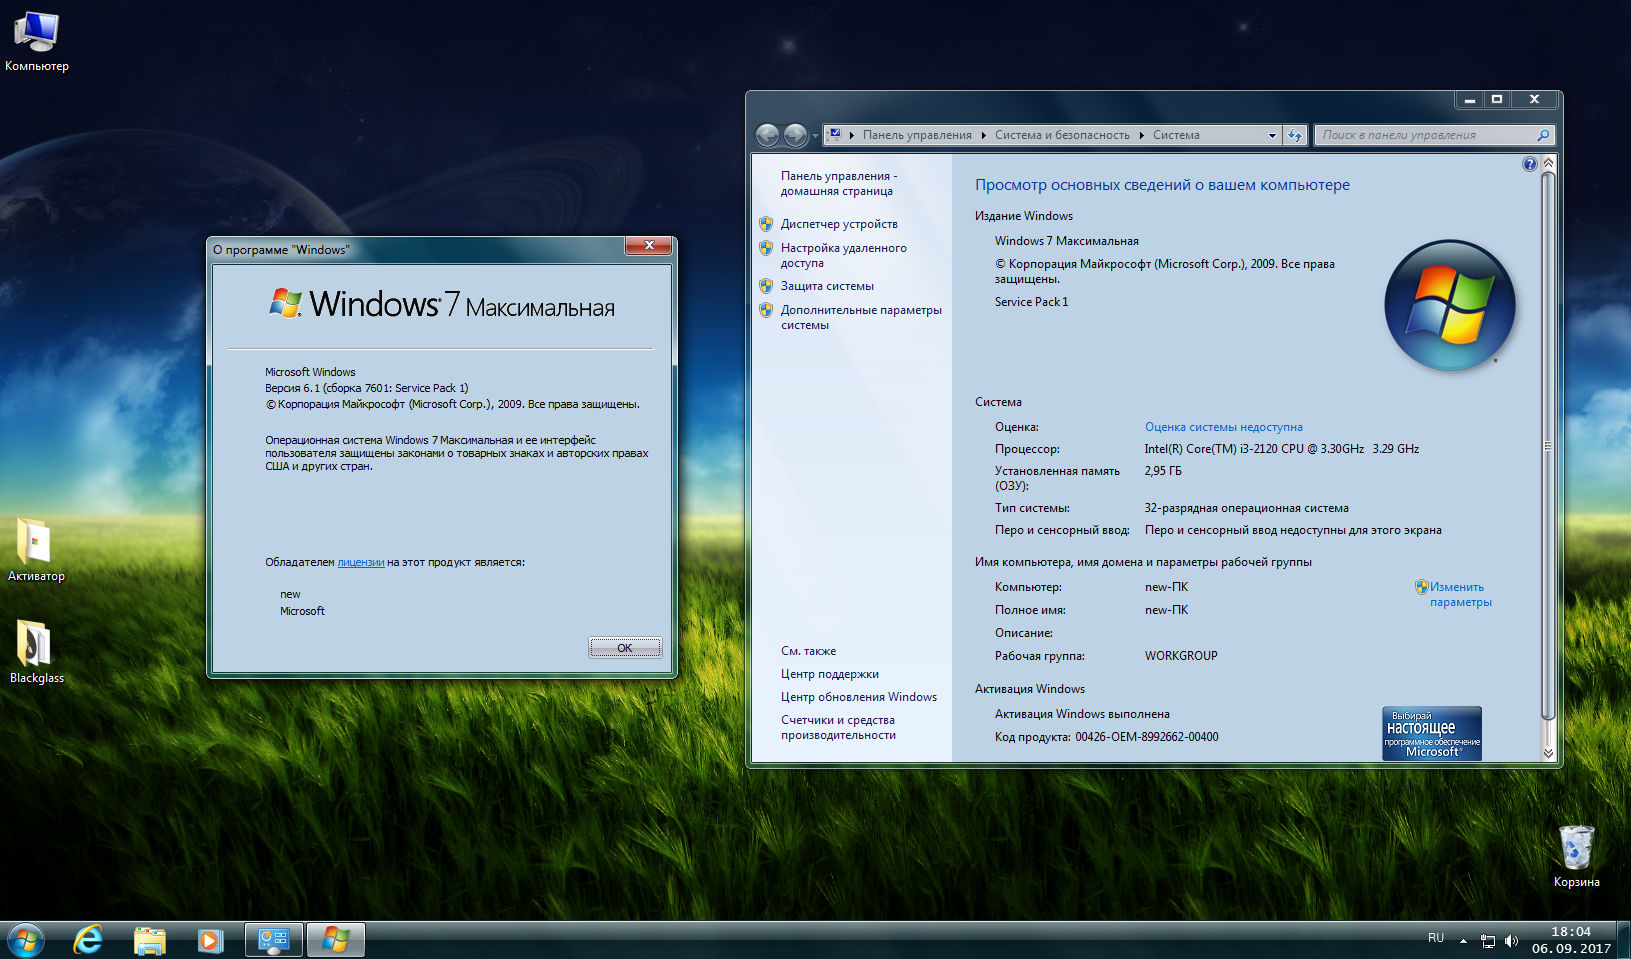 Красивые сборки Windows. OEM сборка Windows. Windows 7 все сборки. Лучшие сборки виндовс. Новая сборка виндовс